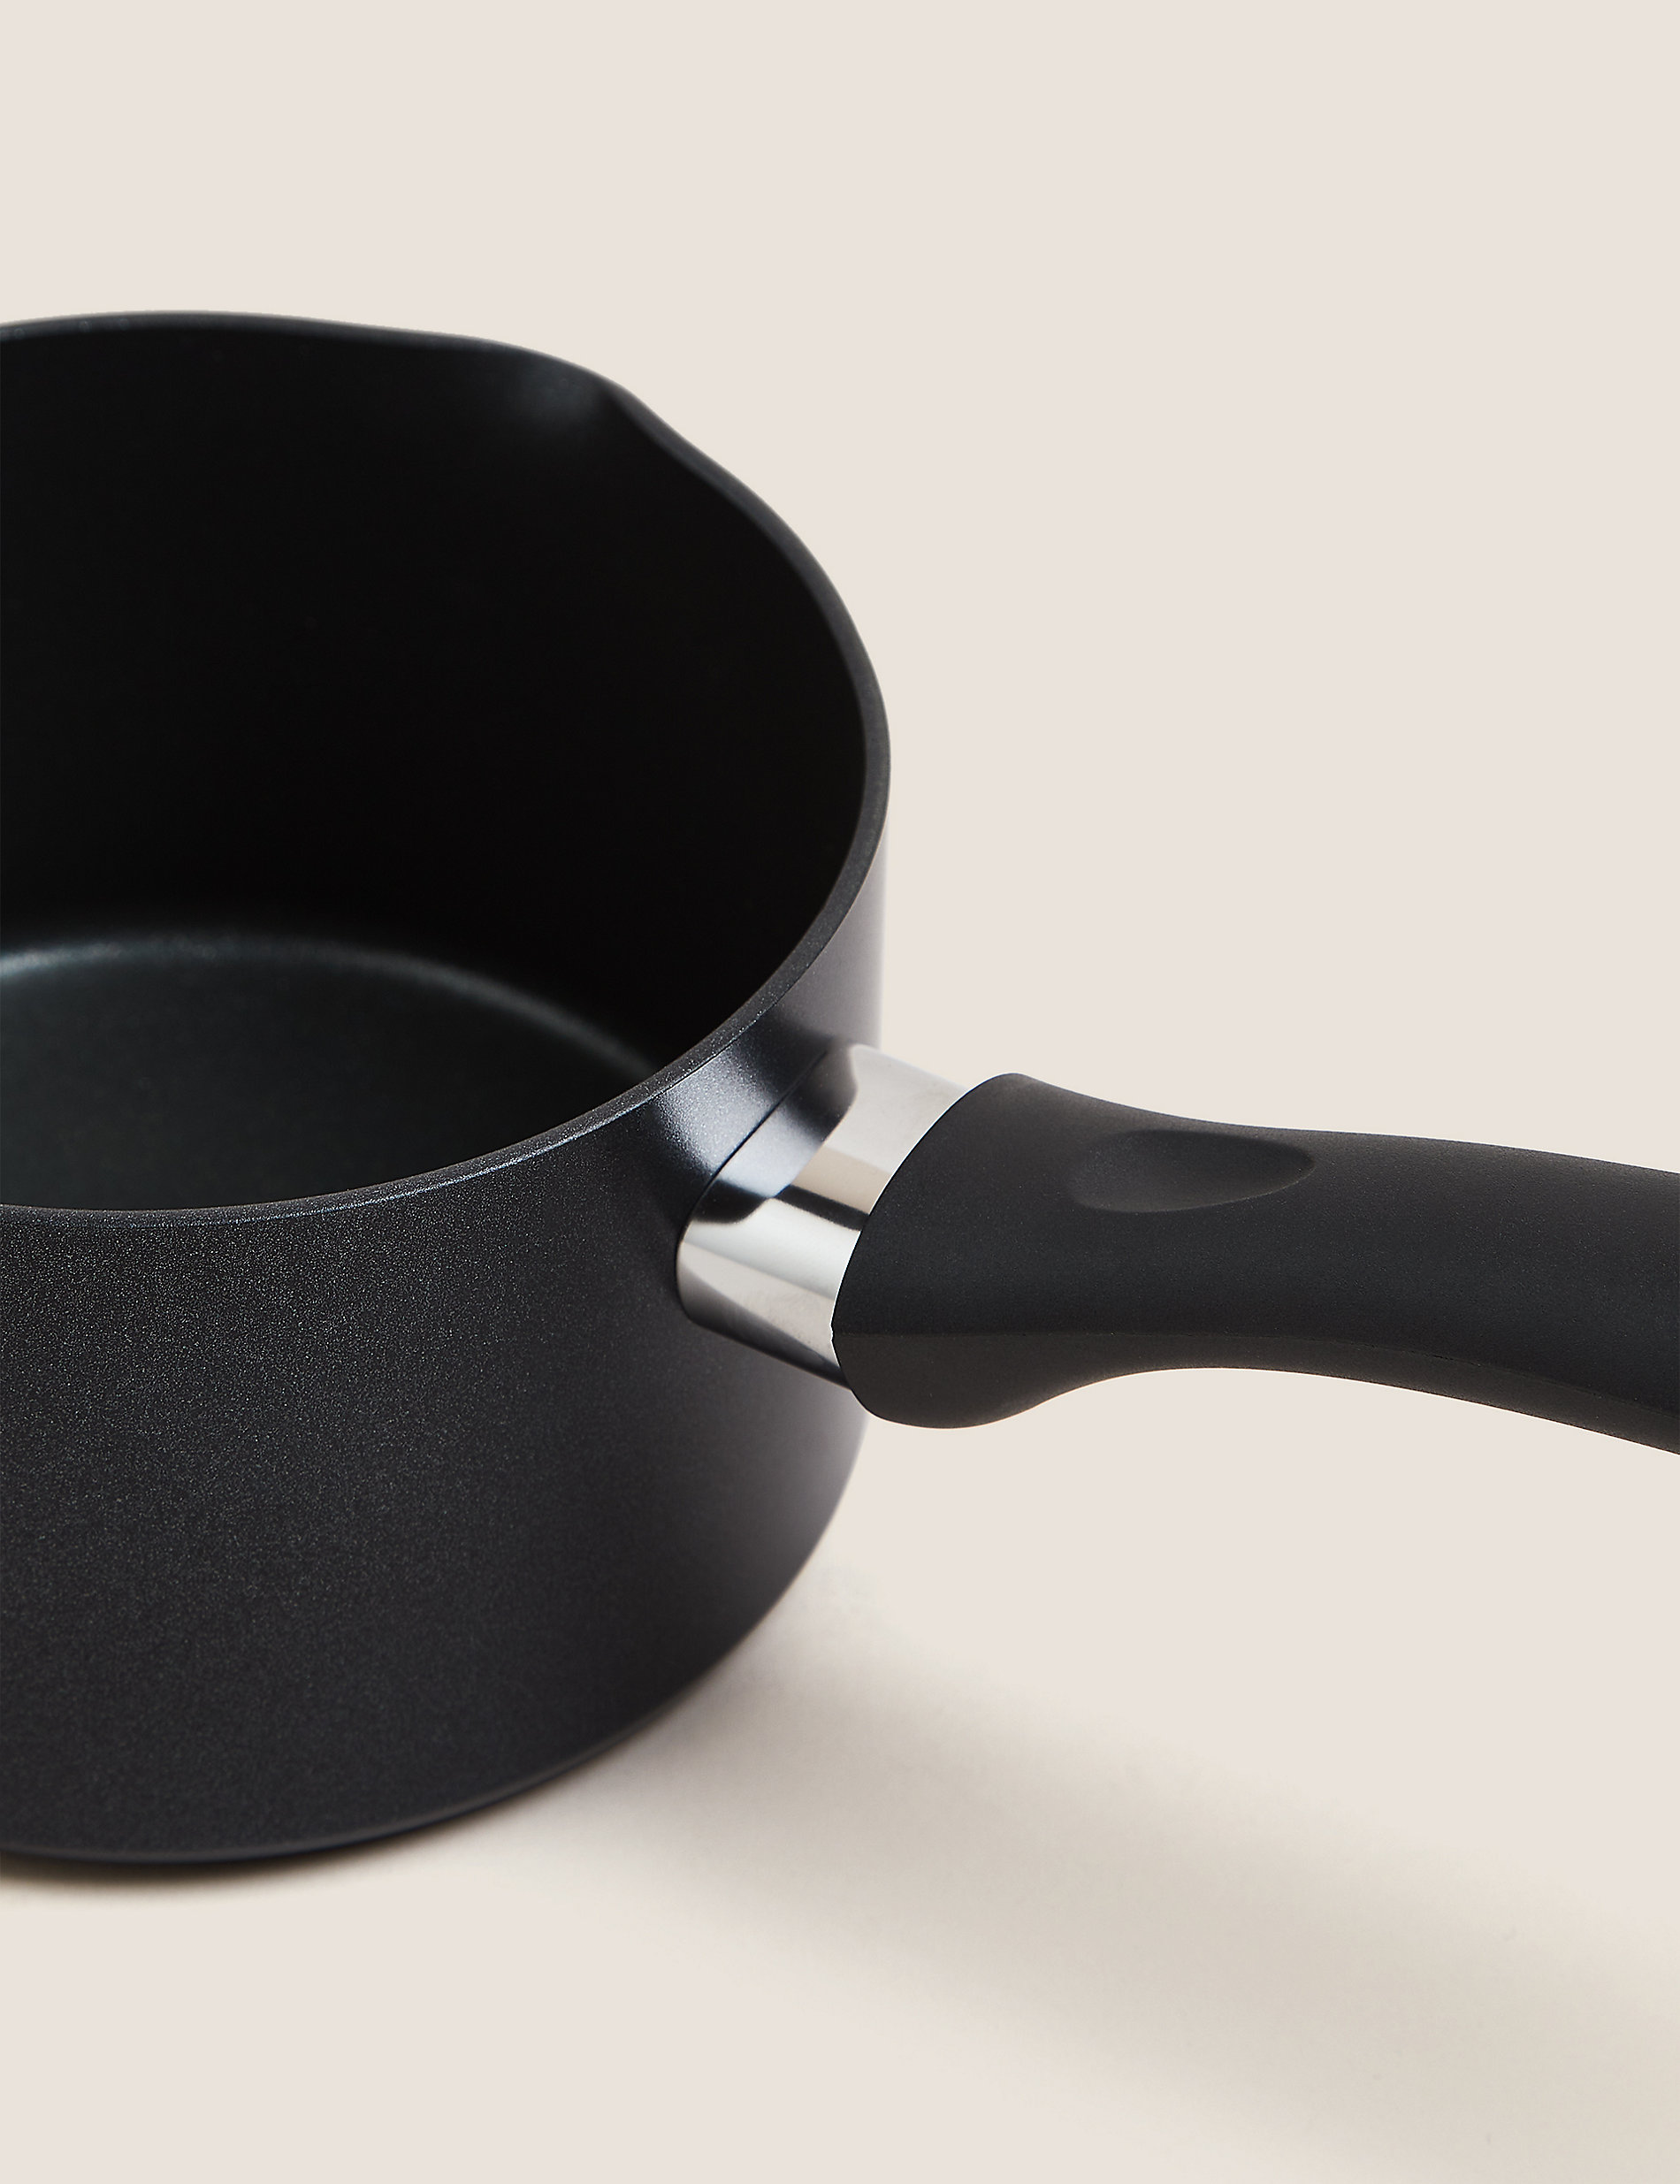 Black Aluminium 14cm Non-Stick Milk Pan